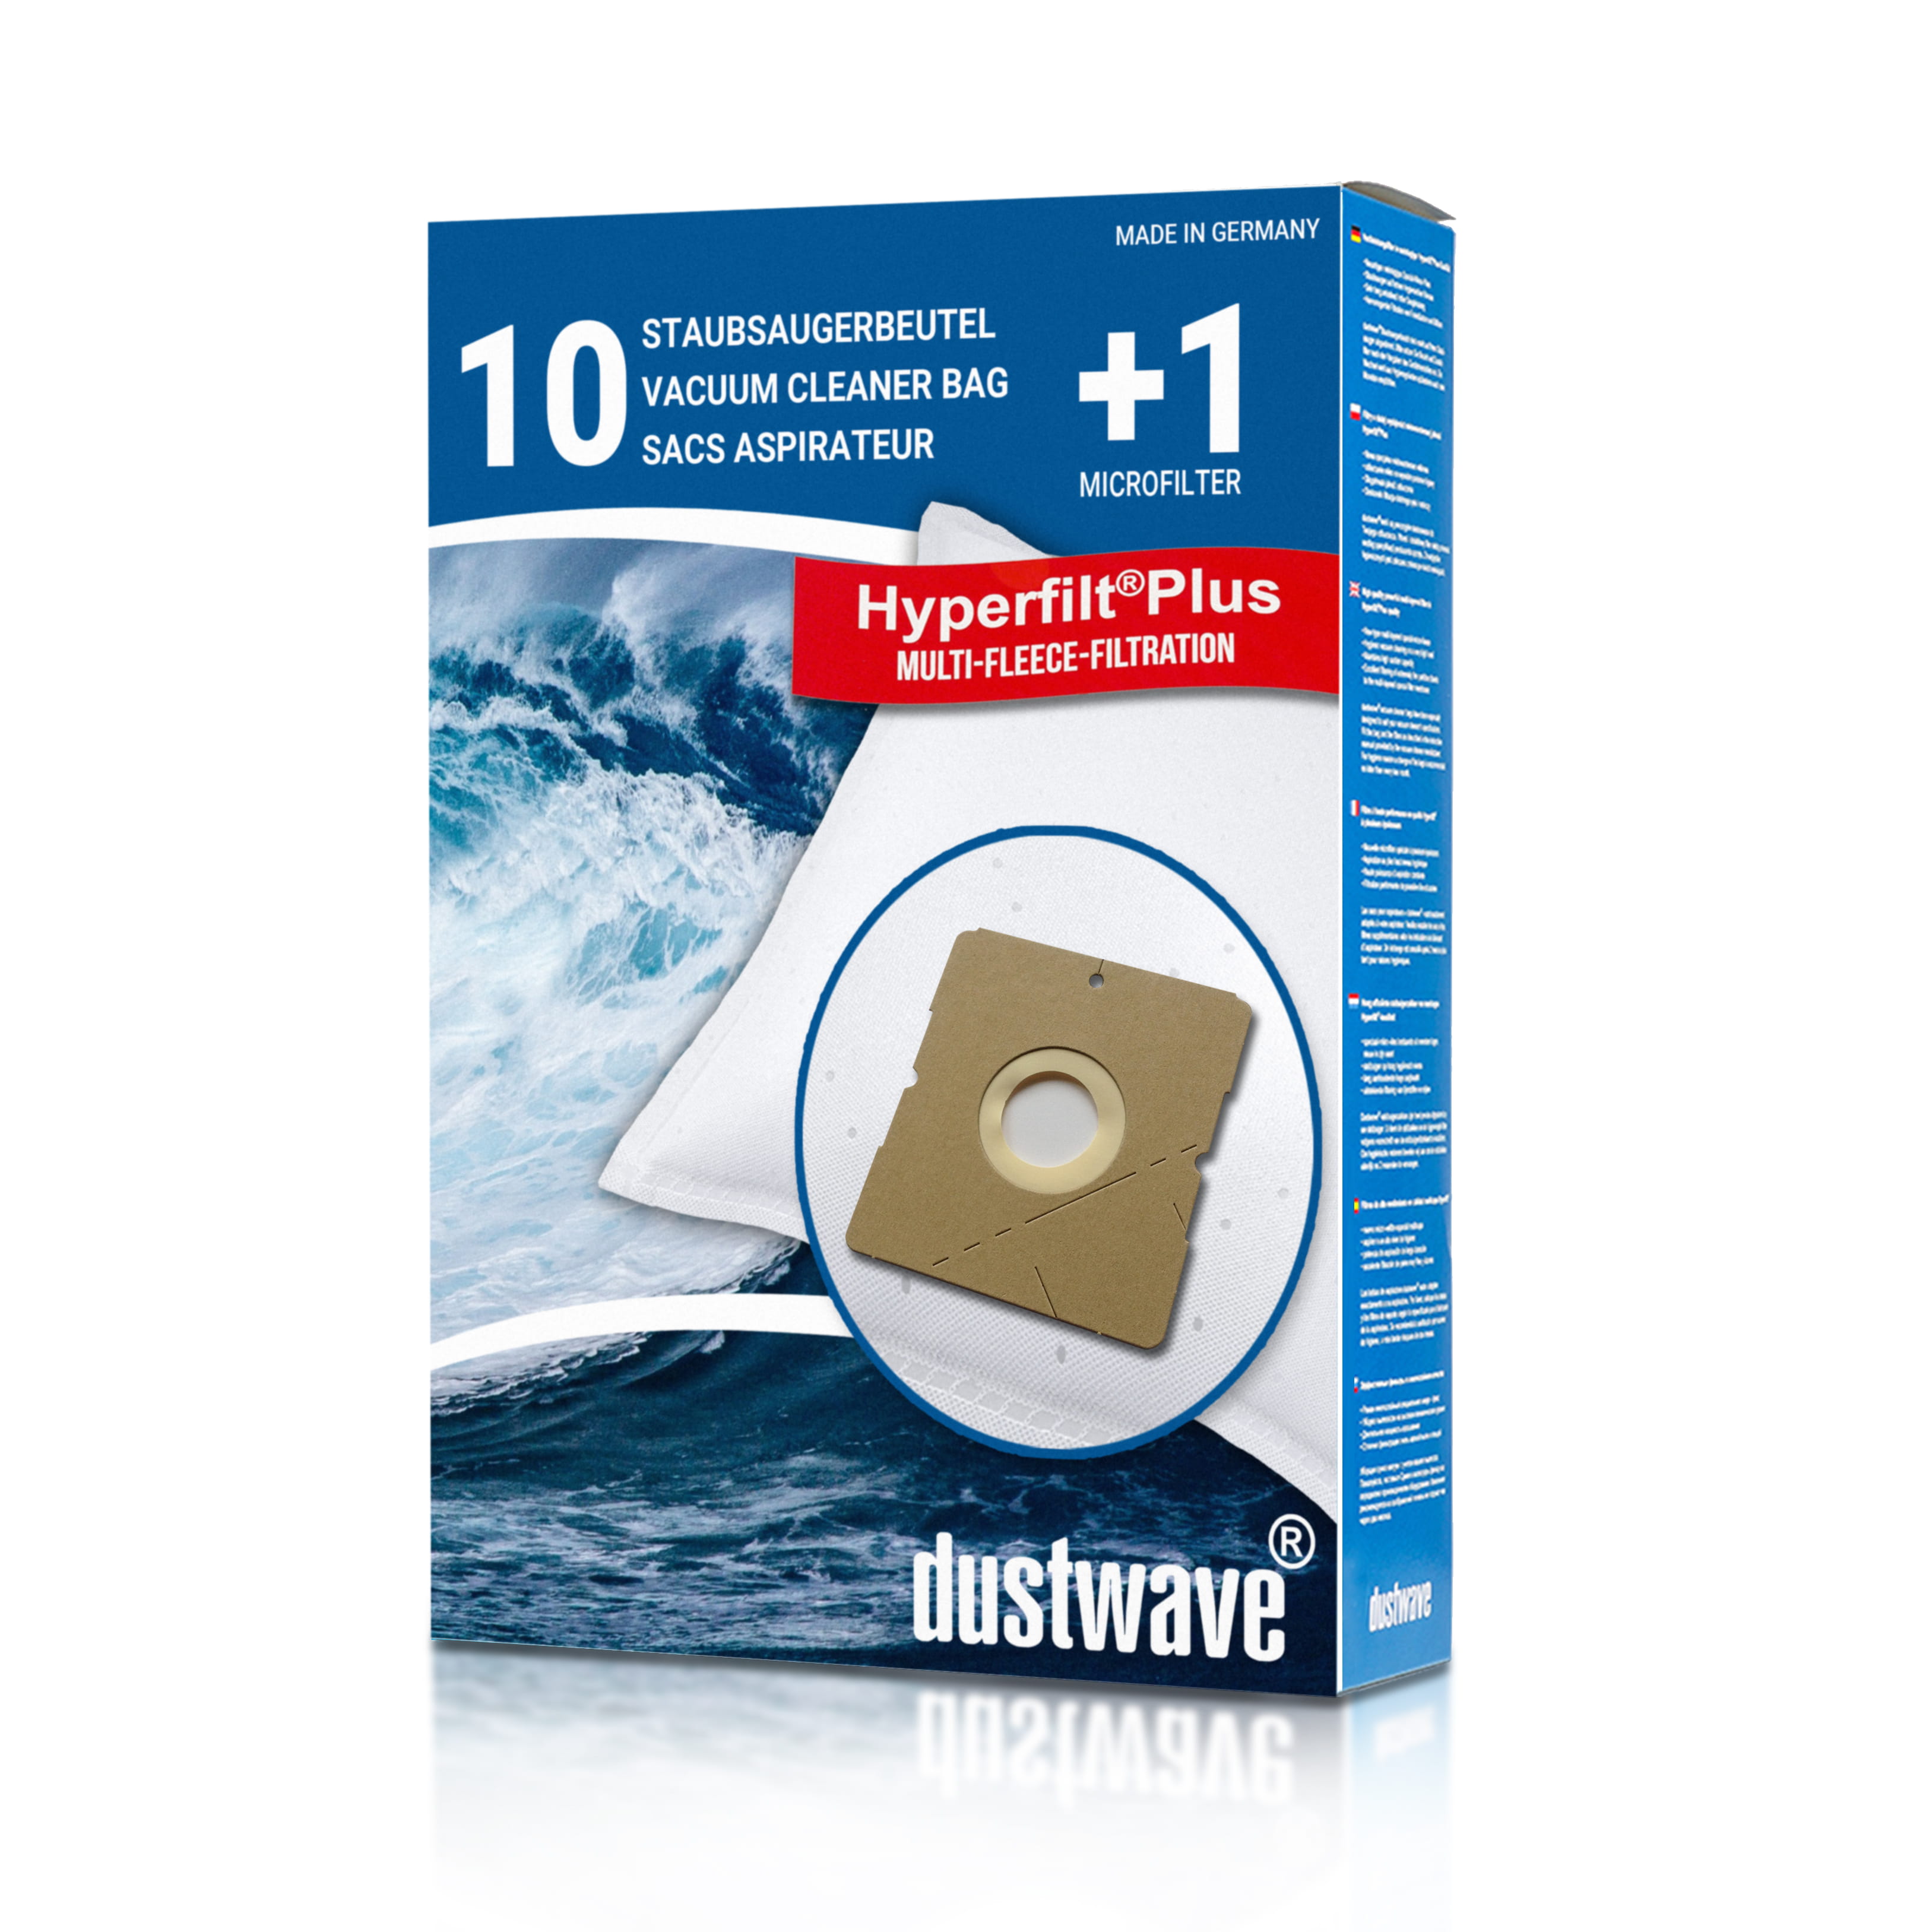 Dustwave® 10 Staubsaugerbeutel für Budget TVC 2400 - hocheffizient, mehrlagiges Mikrovlies mit Hygieneverschluss - Made in Germany